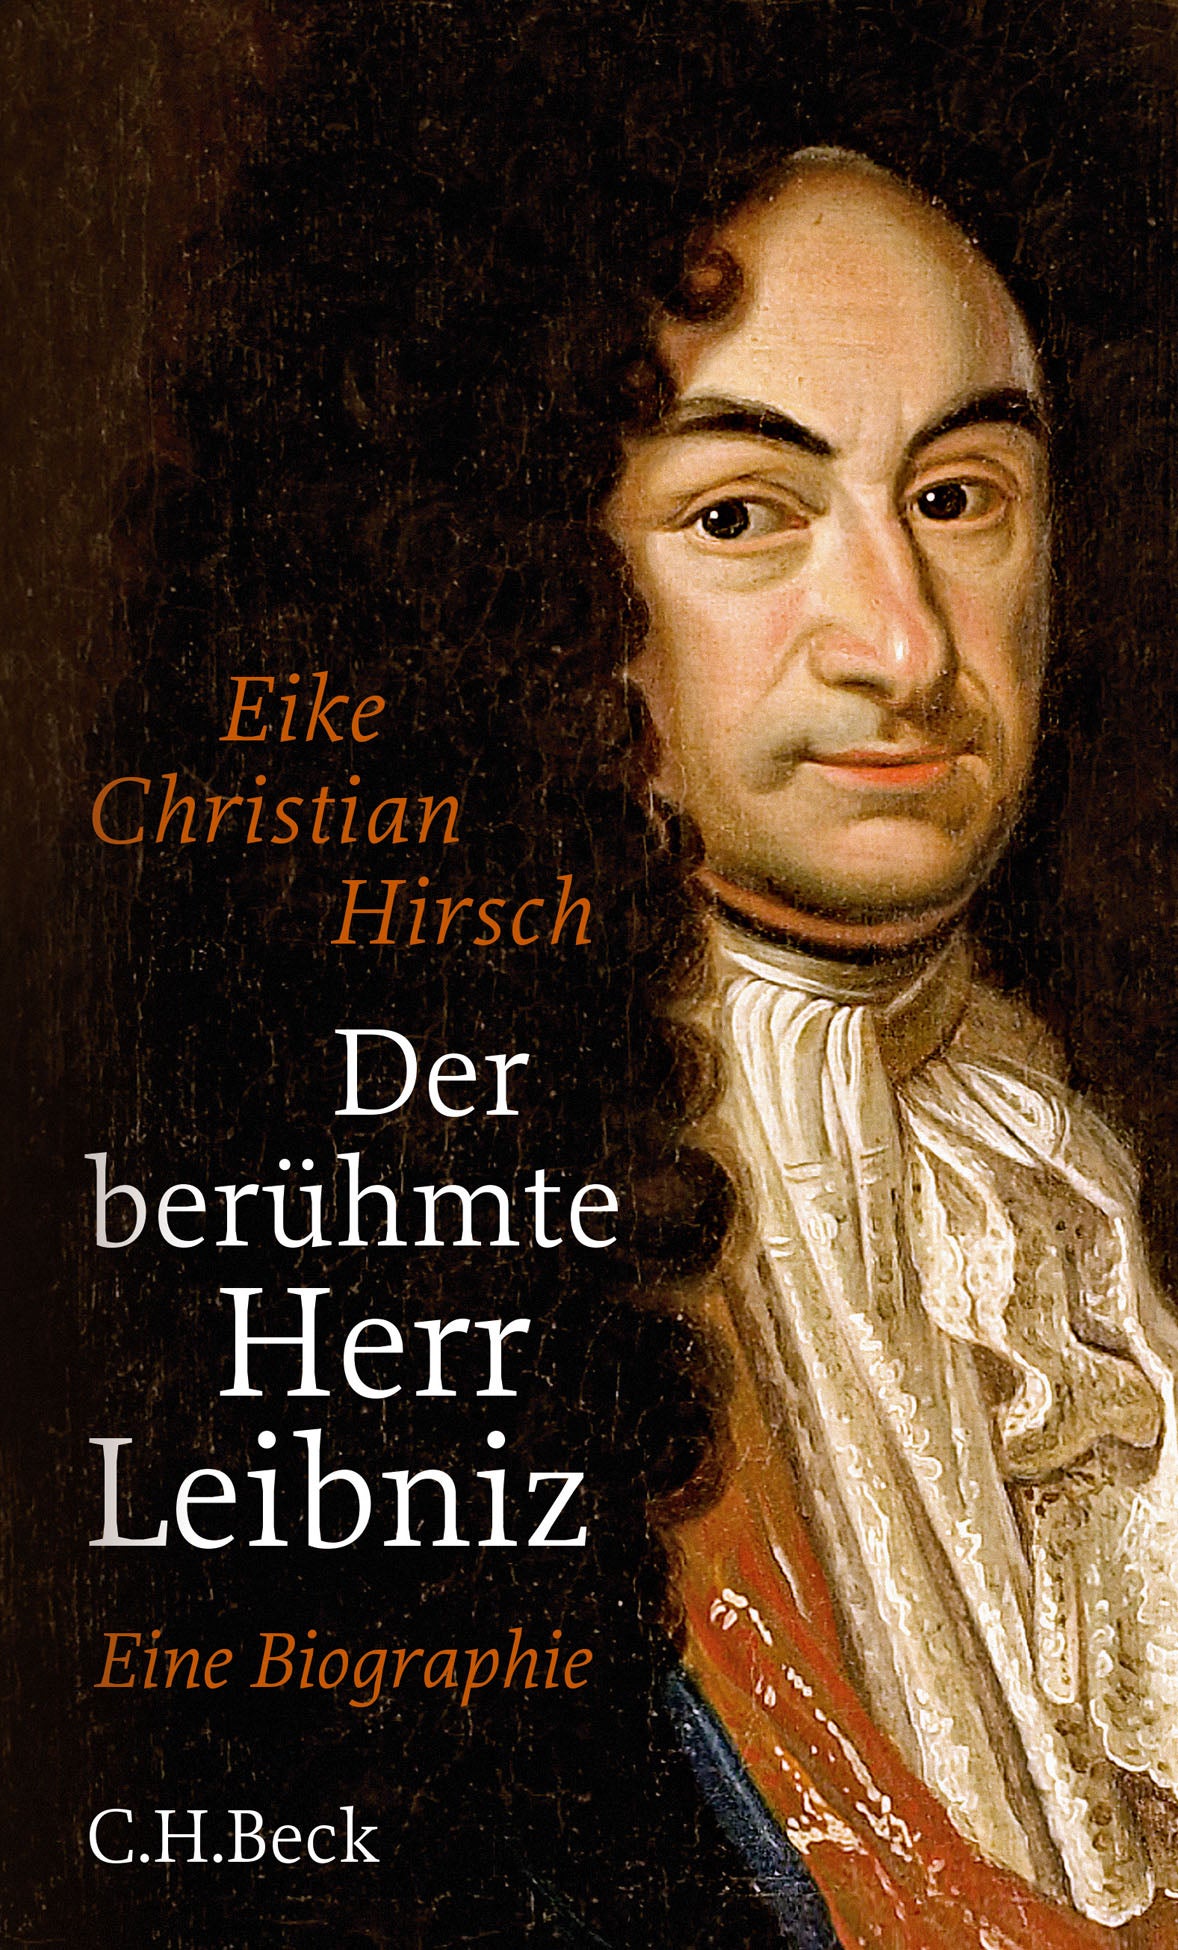 Der berühmte Herr Leibniz